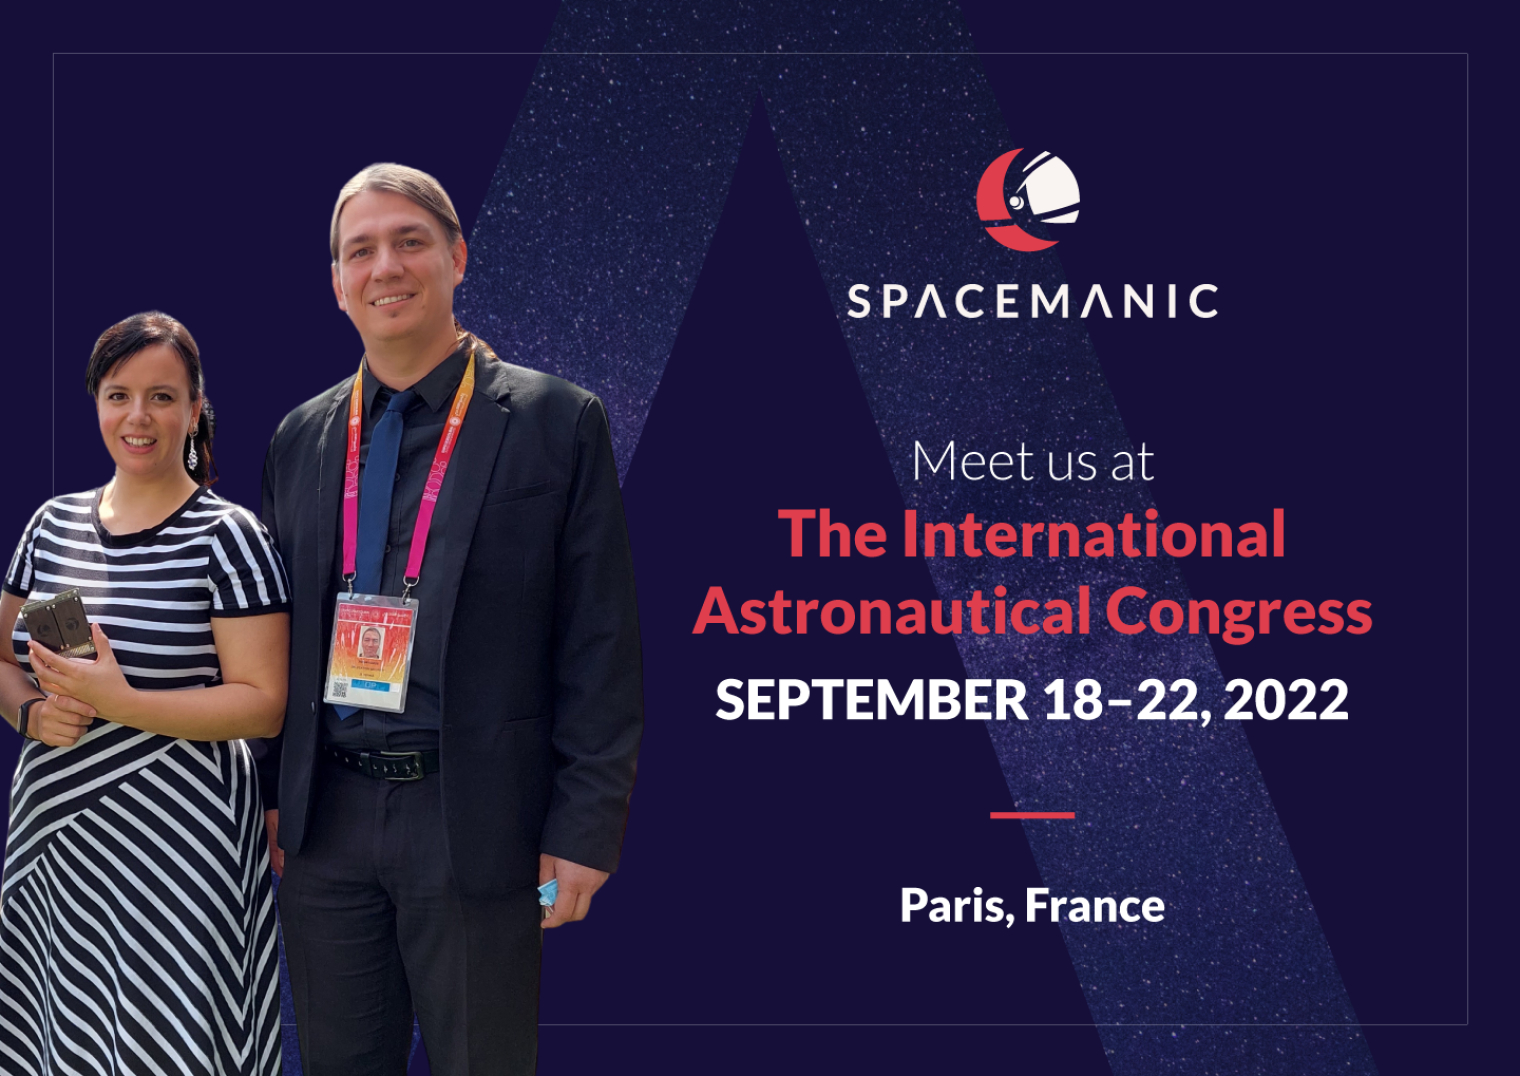 Daniela Jovic and Jakub Kapus to represent Spacemanic at IAC 2022, Paris